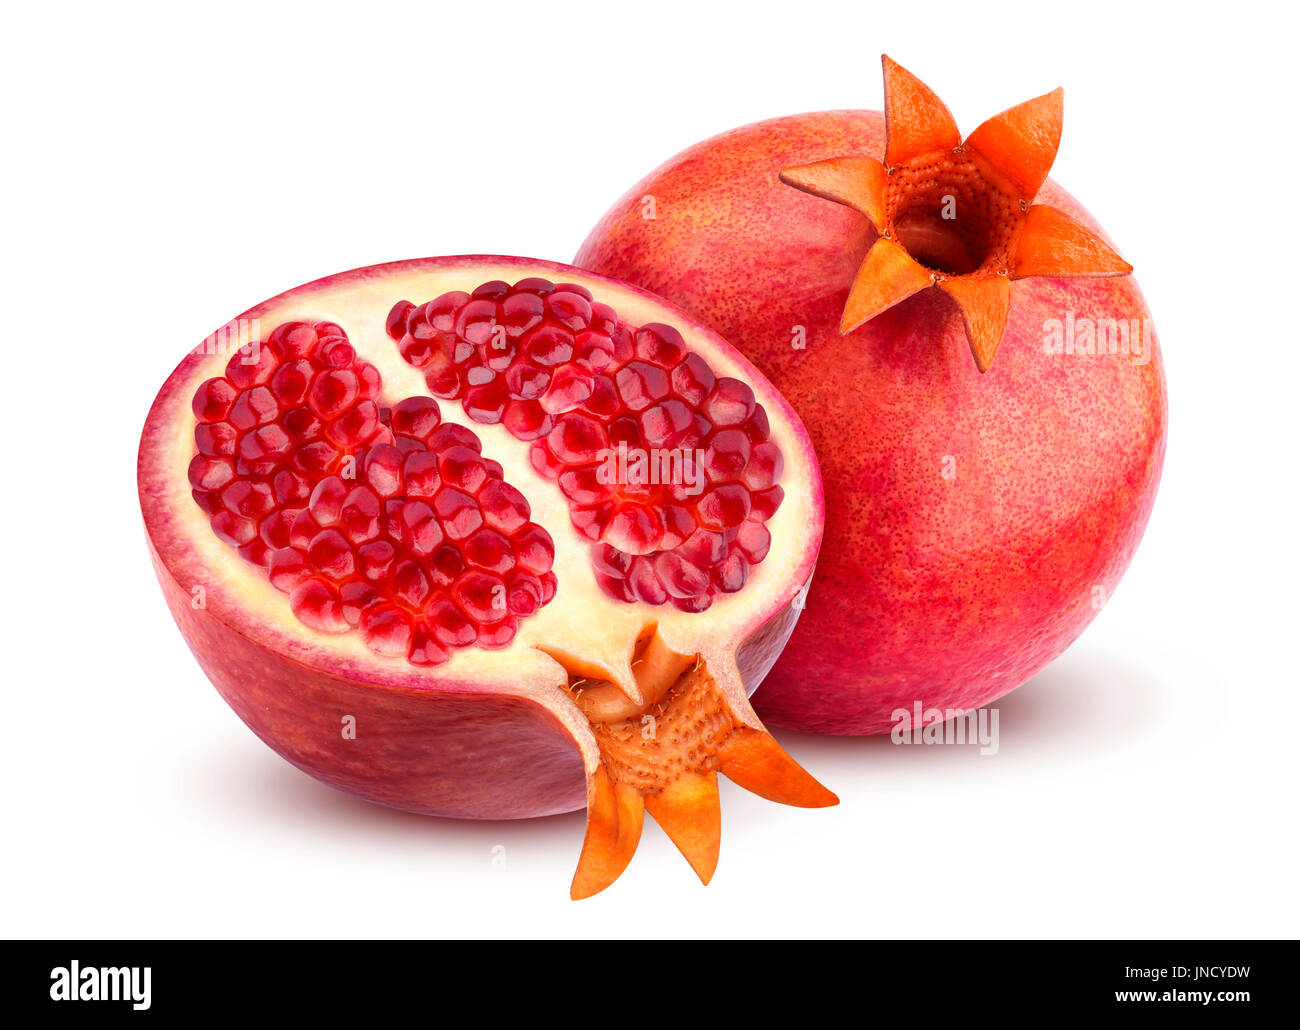 Pomegranate isolated on white background Stock Photo